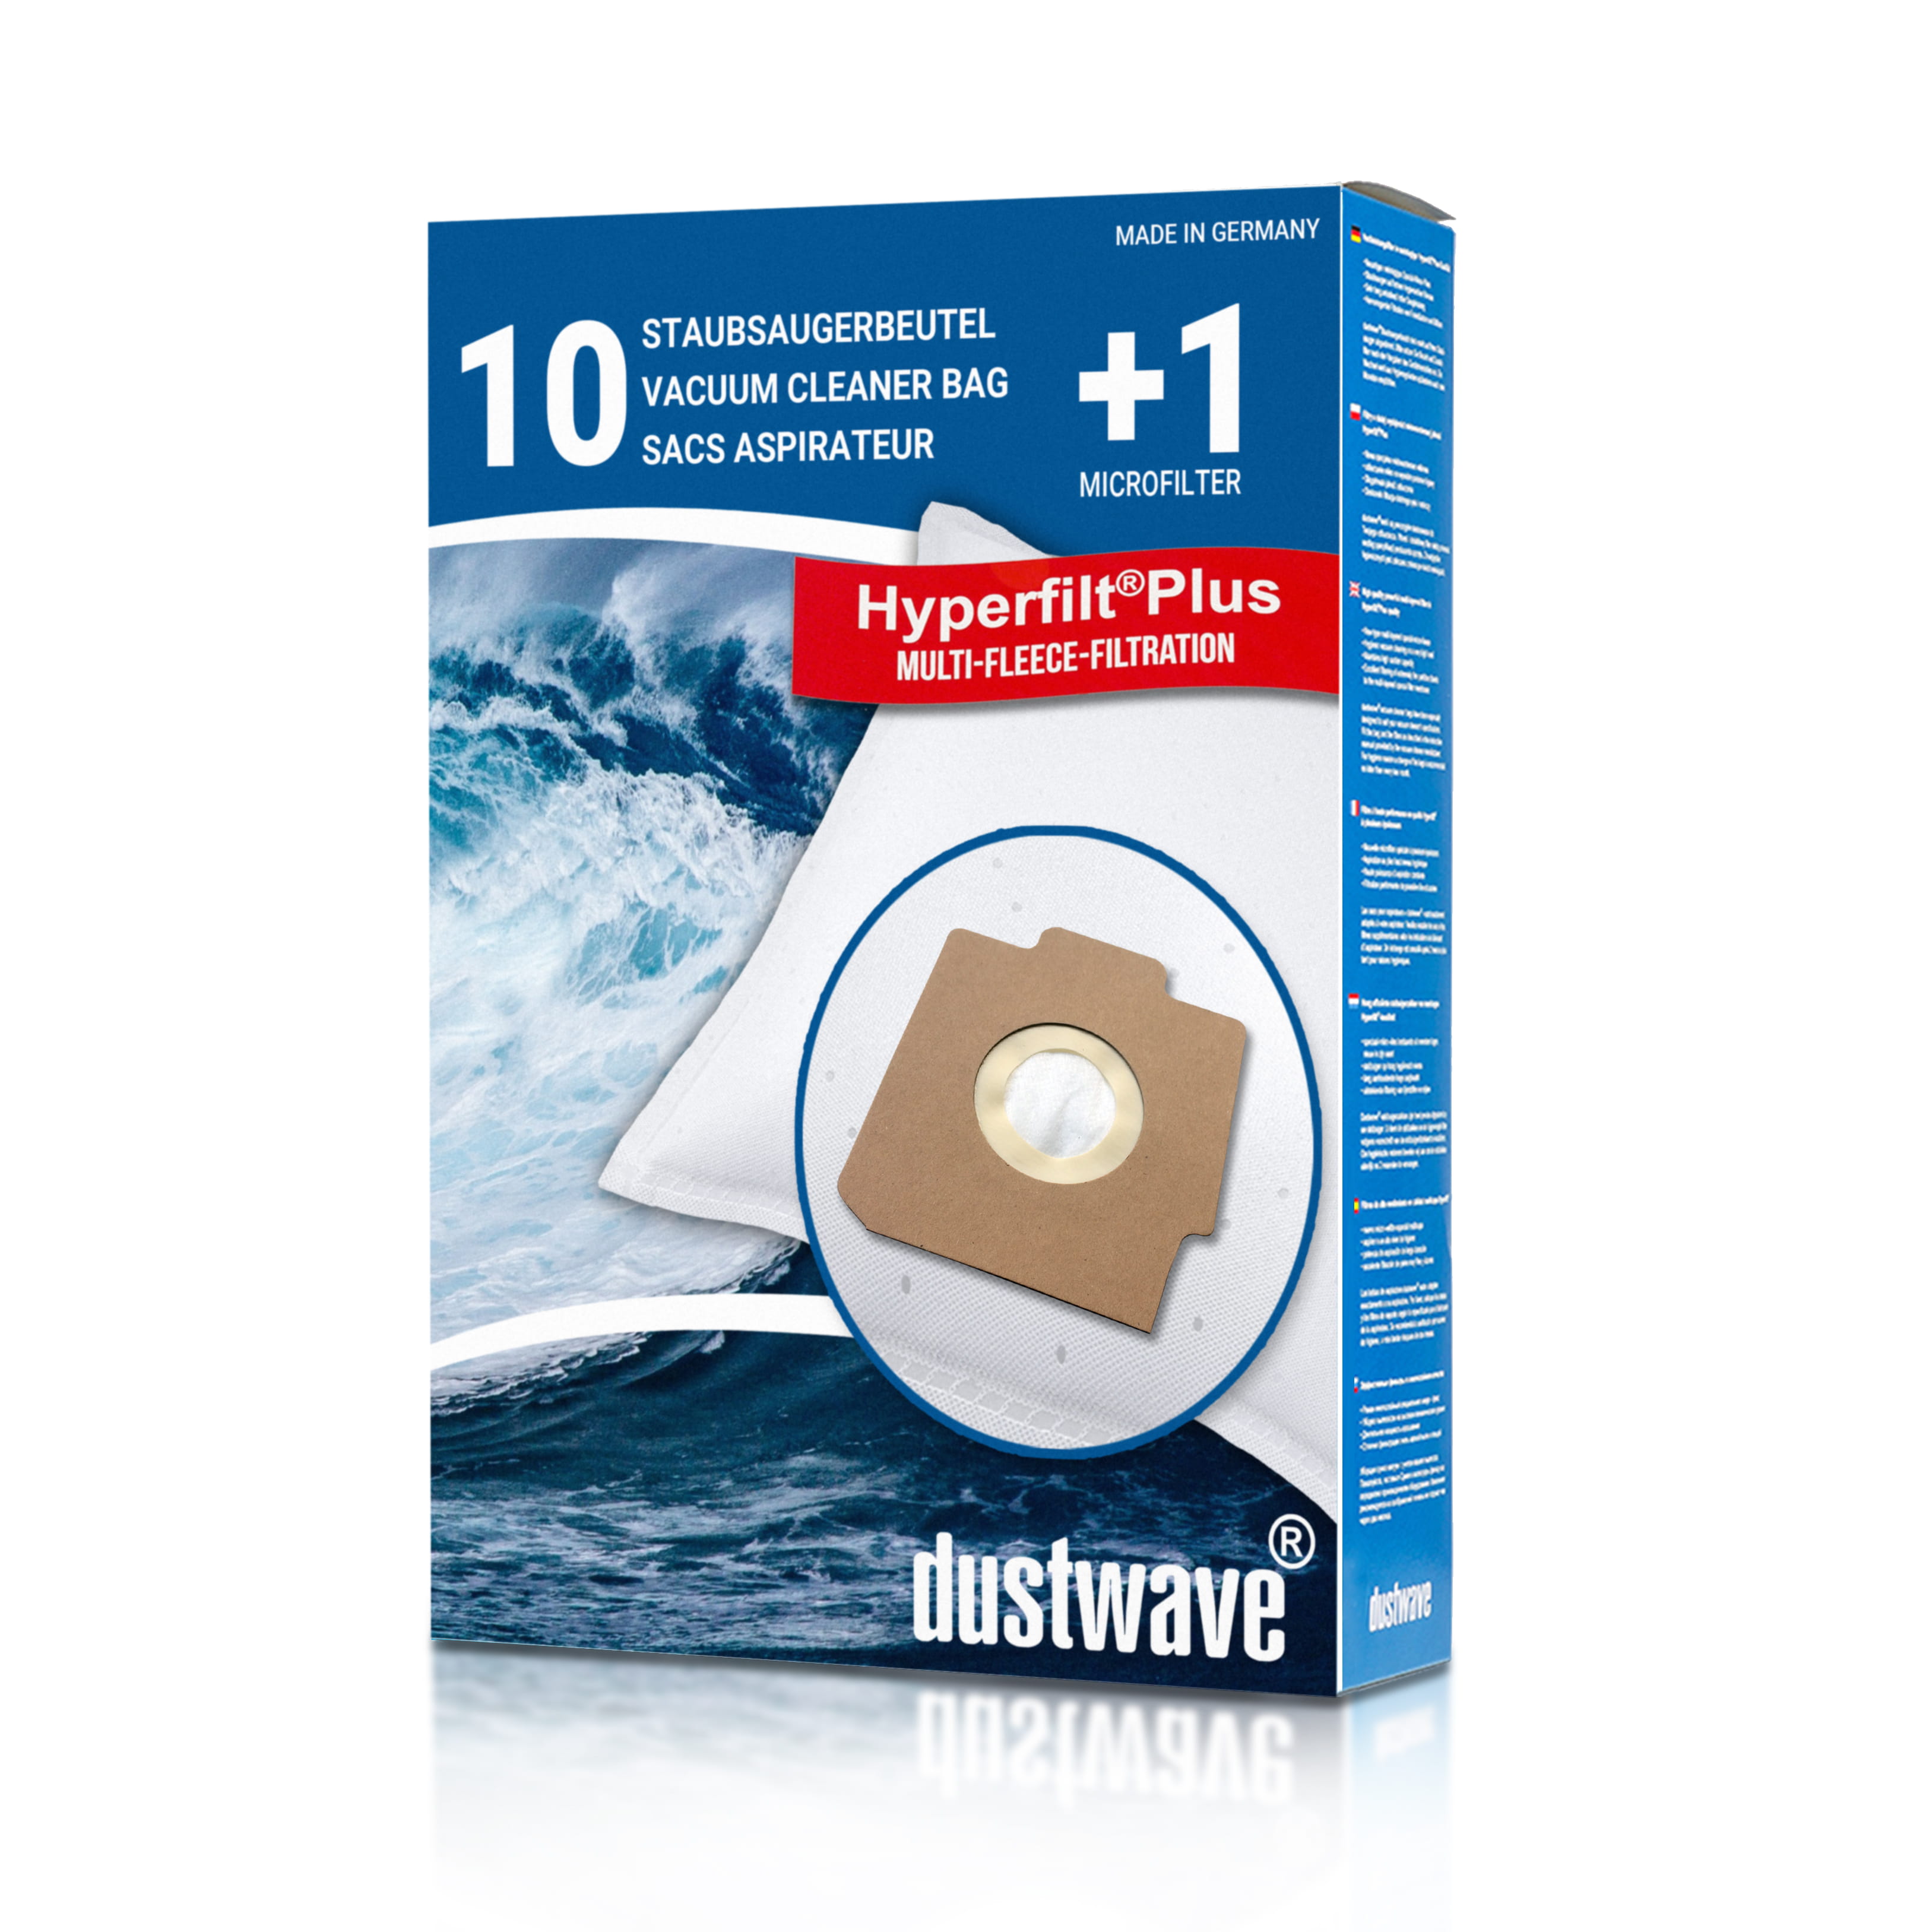 Dustwave® 10 Staubsaugerbeutel für Hoover Sensotronic System 1100 - hocheffizient, mehrlagiges Mikrovlies mit Hygieneverschluss - Made in Germany